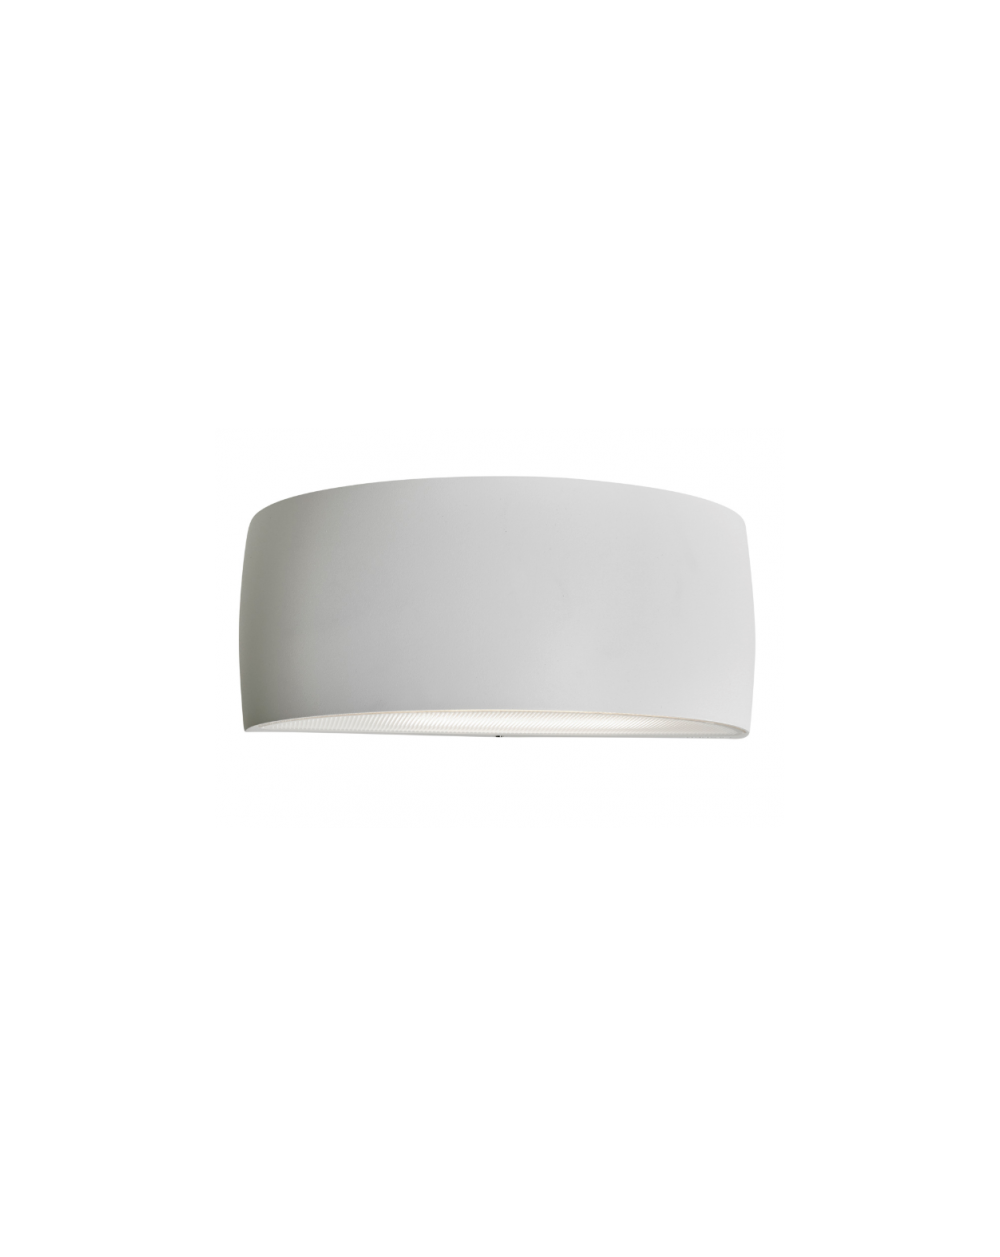 Lampa ścienna / kinkiet Vasa LED - Norlys oprawa ledowa zewnętrzna nowoczesna do iluminacji biała czarna grafit aluminium